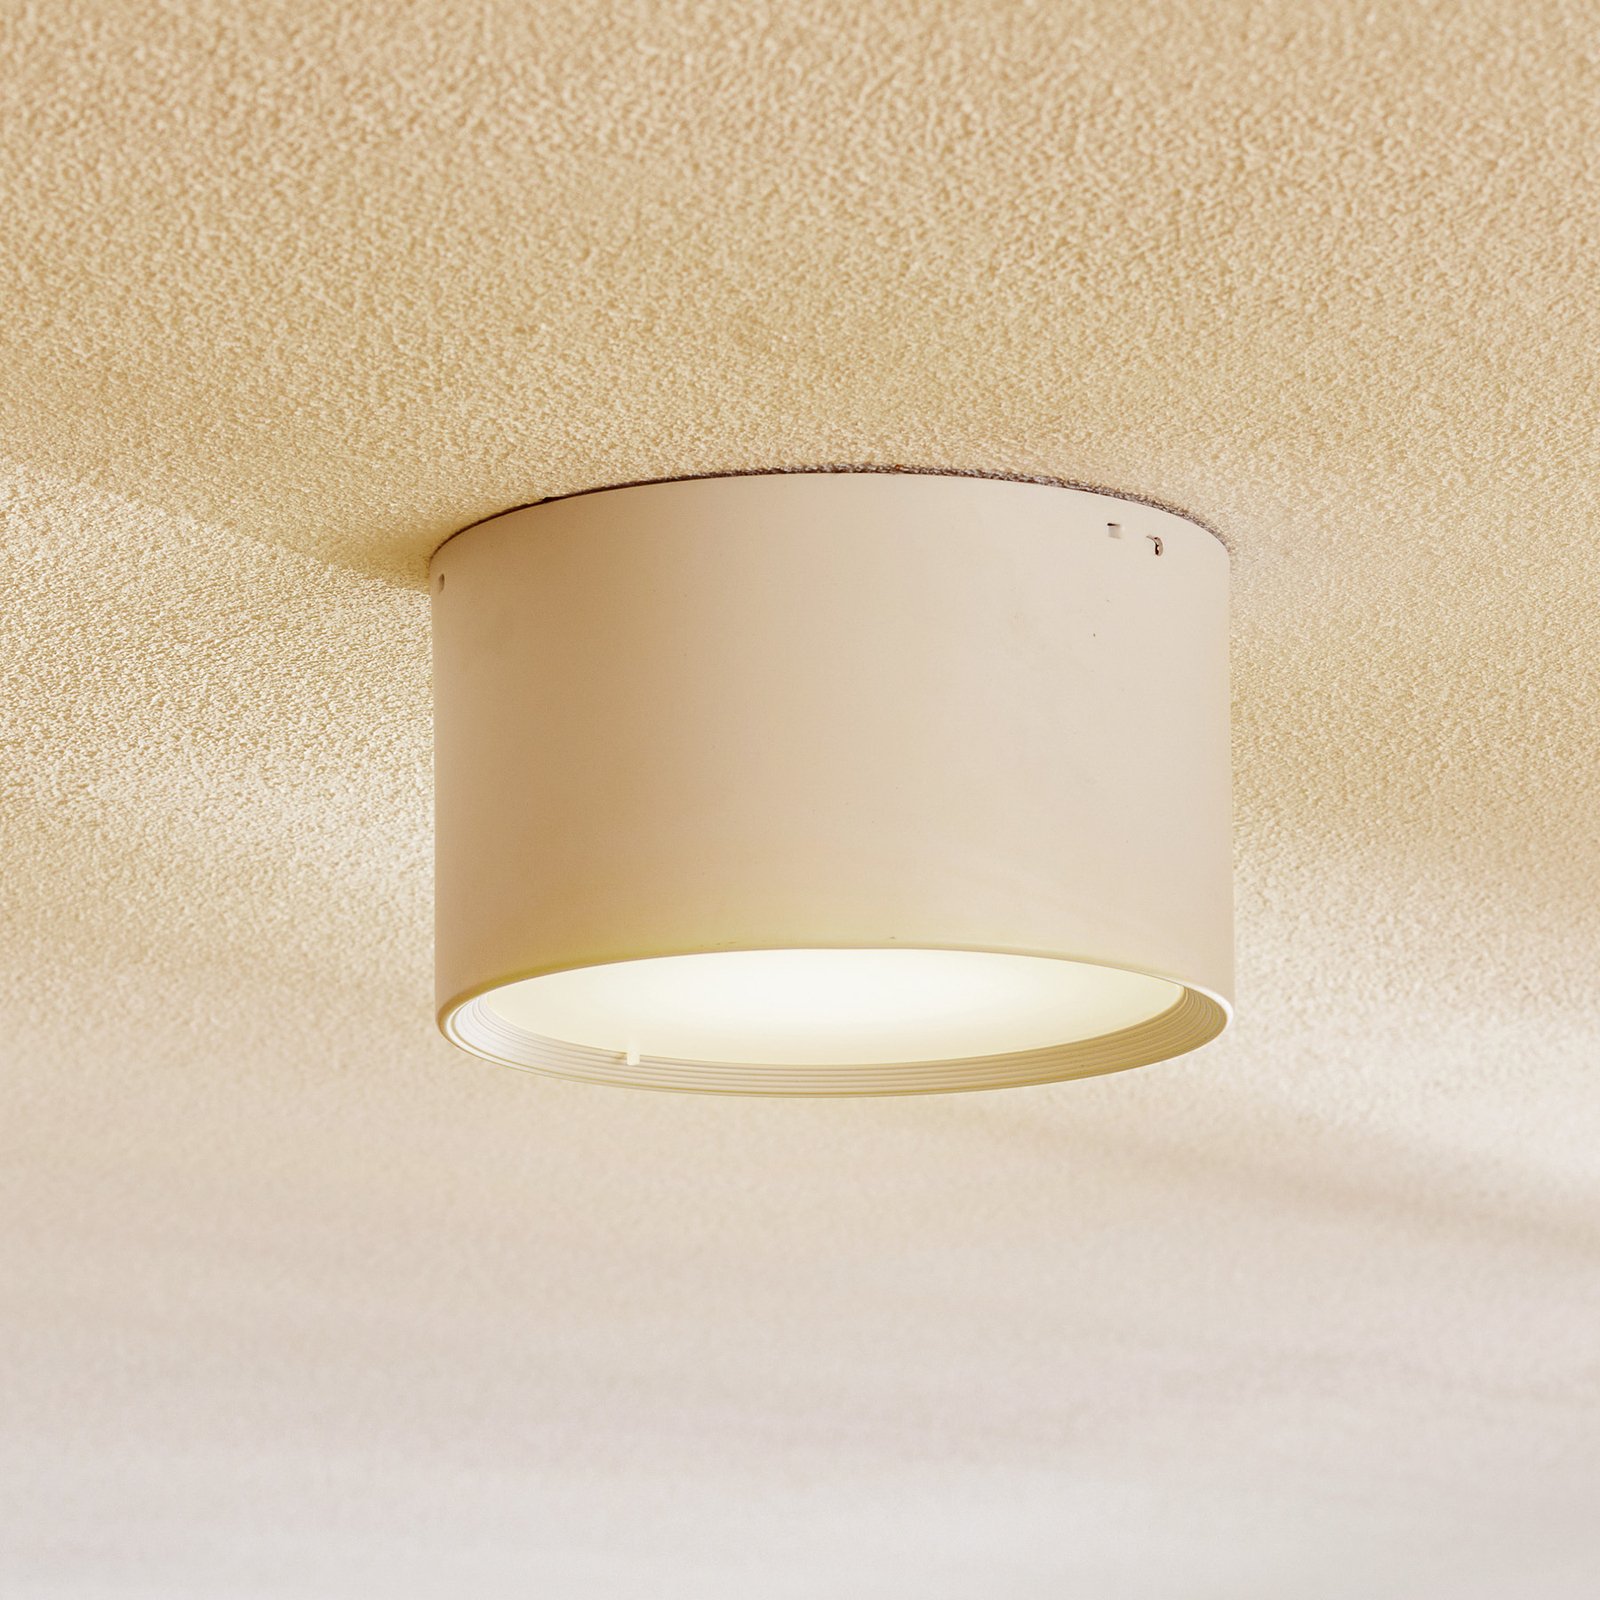 Ita LED-downlight i hvitt med avdekning, Ø 15 cm